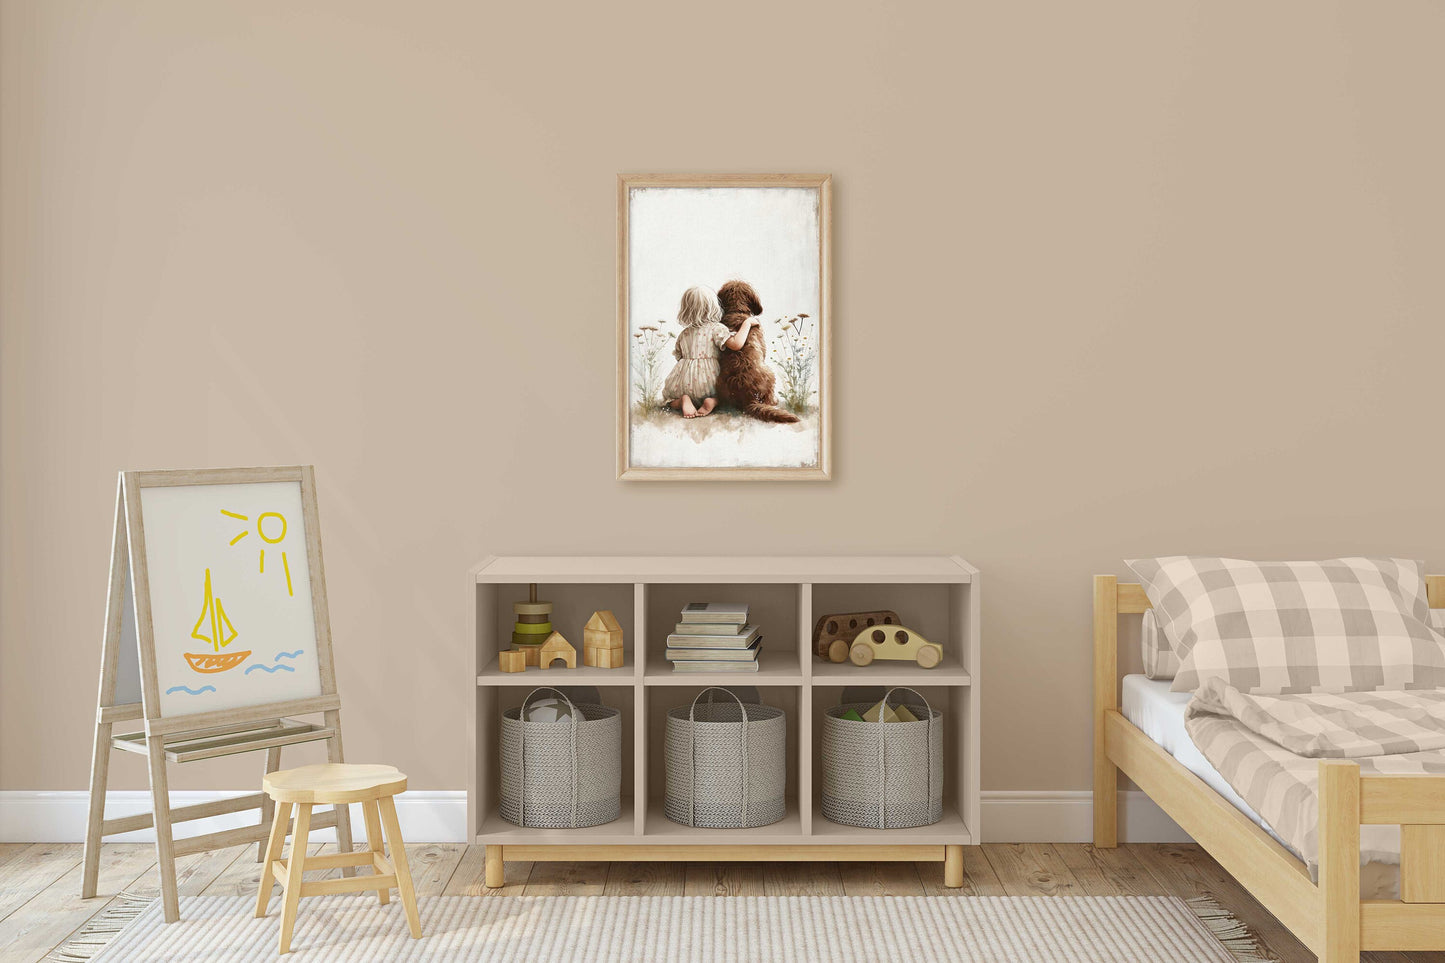 Labradoodle Nursery Print, Girl & Dog Art Print, Brown Labradoodle Painting, Dog Nursery Decor, Toddler Decor Girl, Printable Dog Wall Art